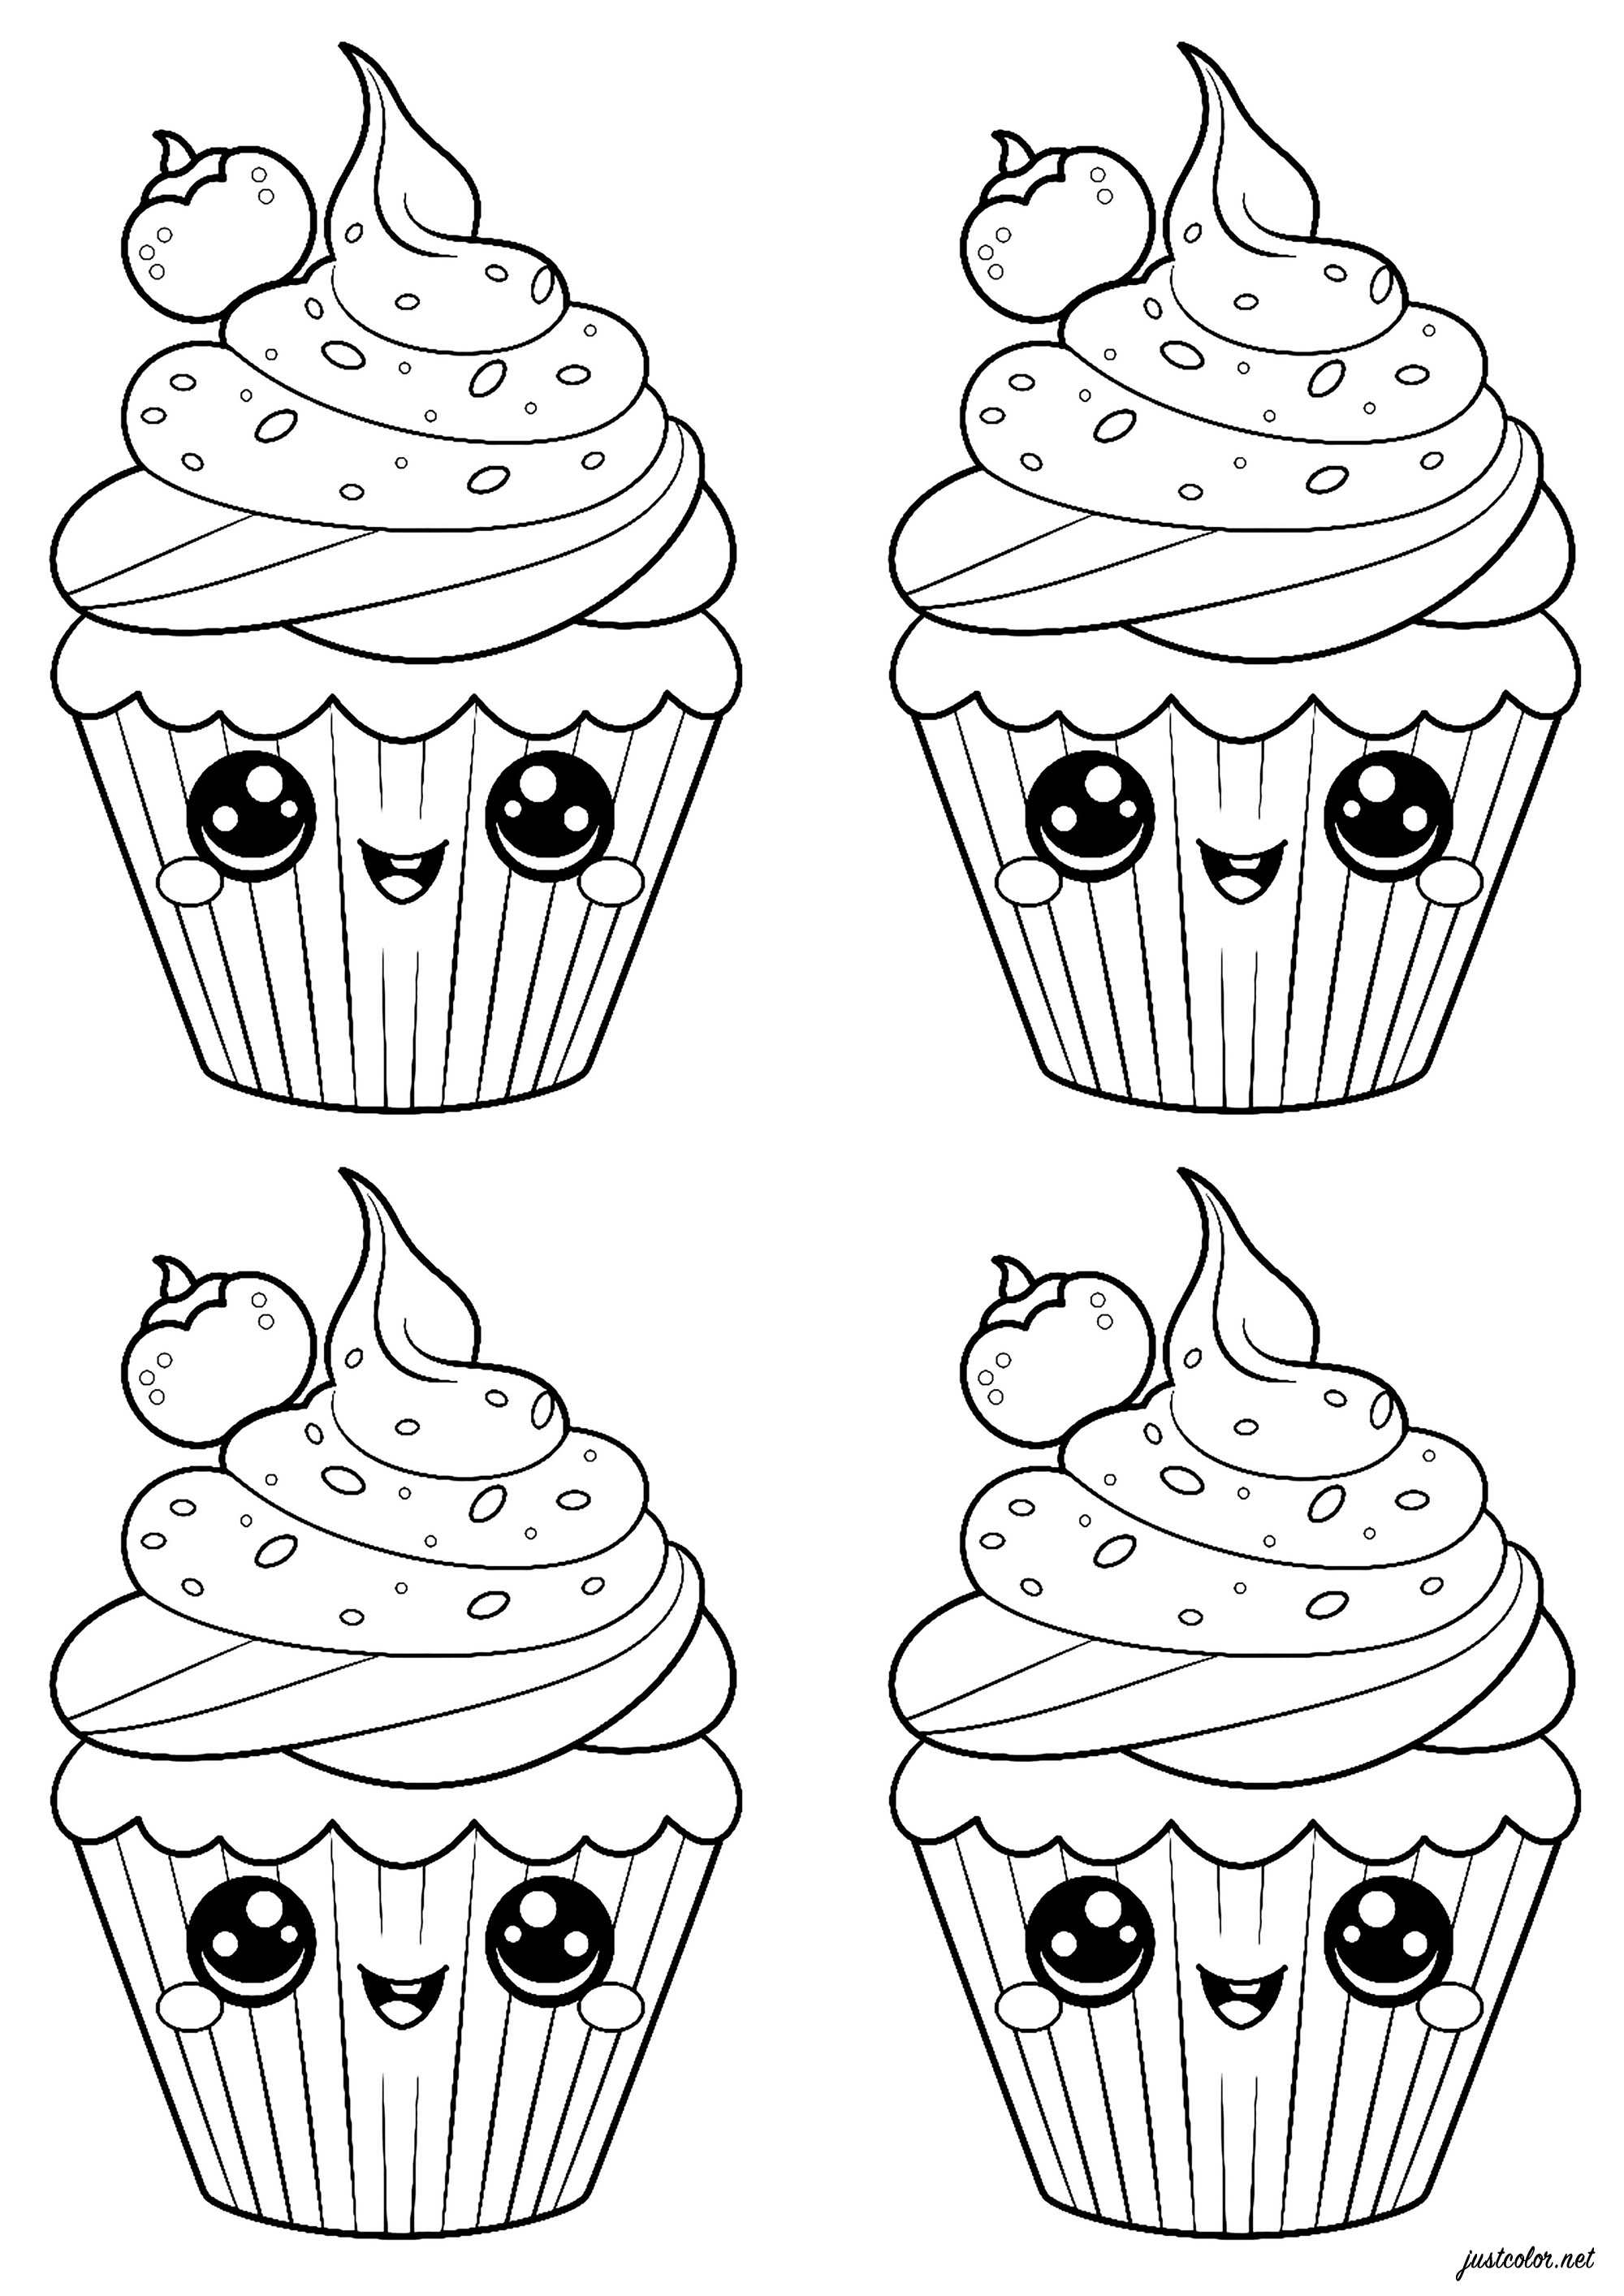 Quattro simpatici cupcake. Colorate questi graziosi pasticcini